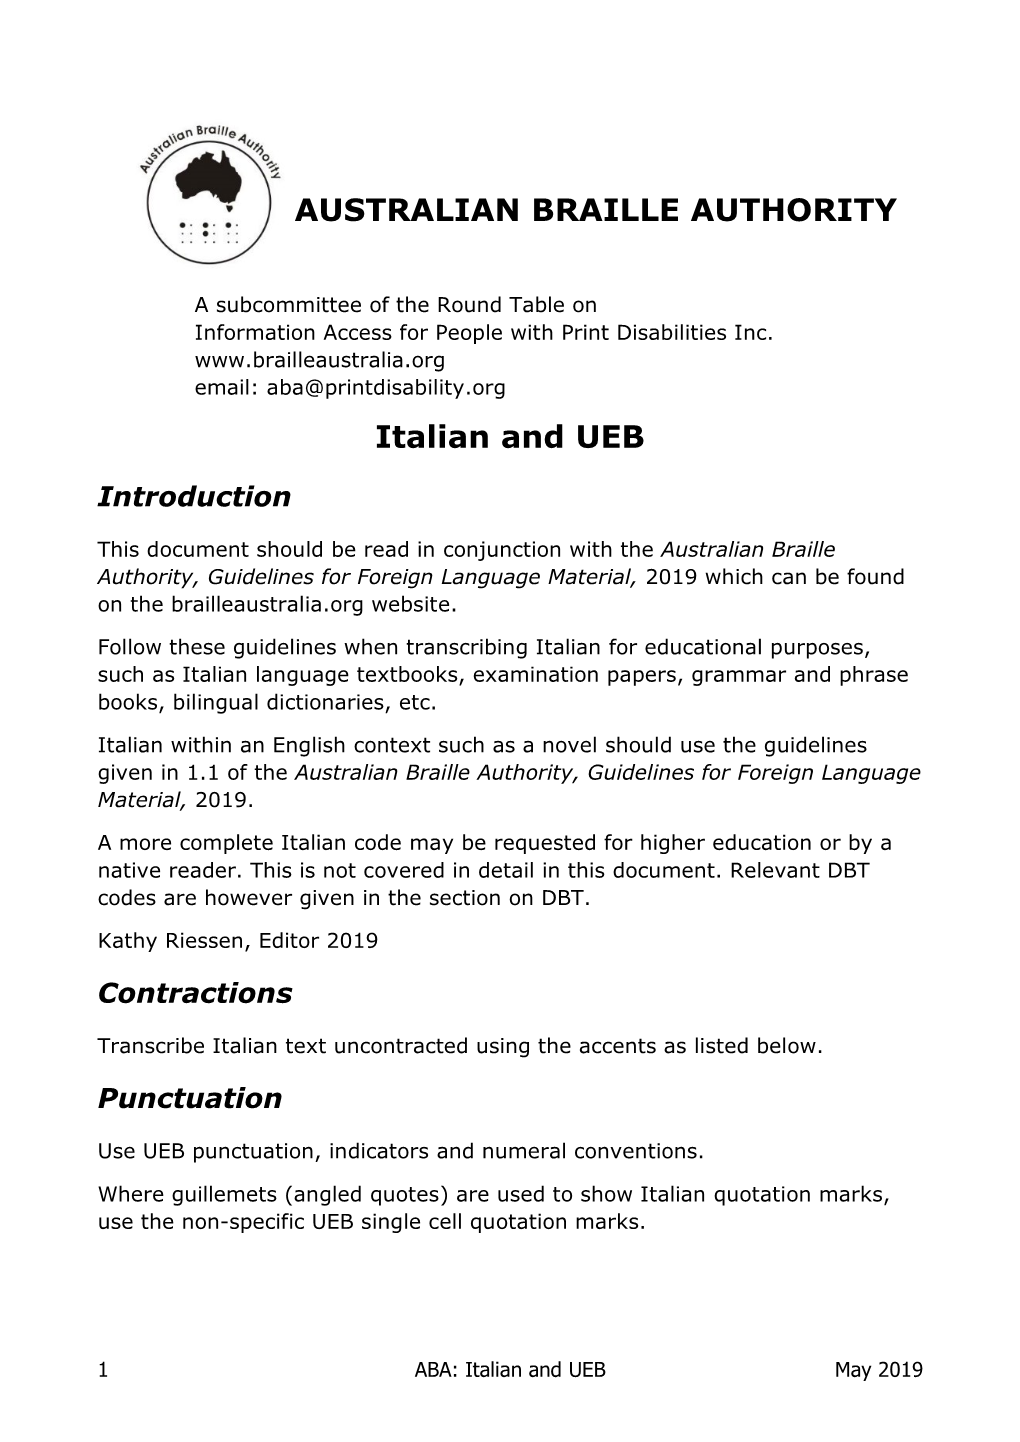 AUSTRALIAN BRAILLE AUTHORITY Italian And